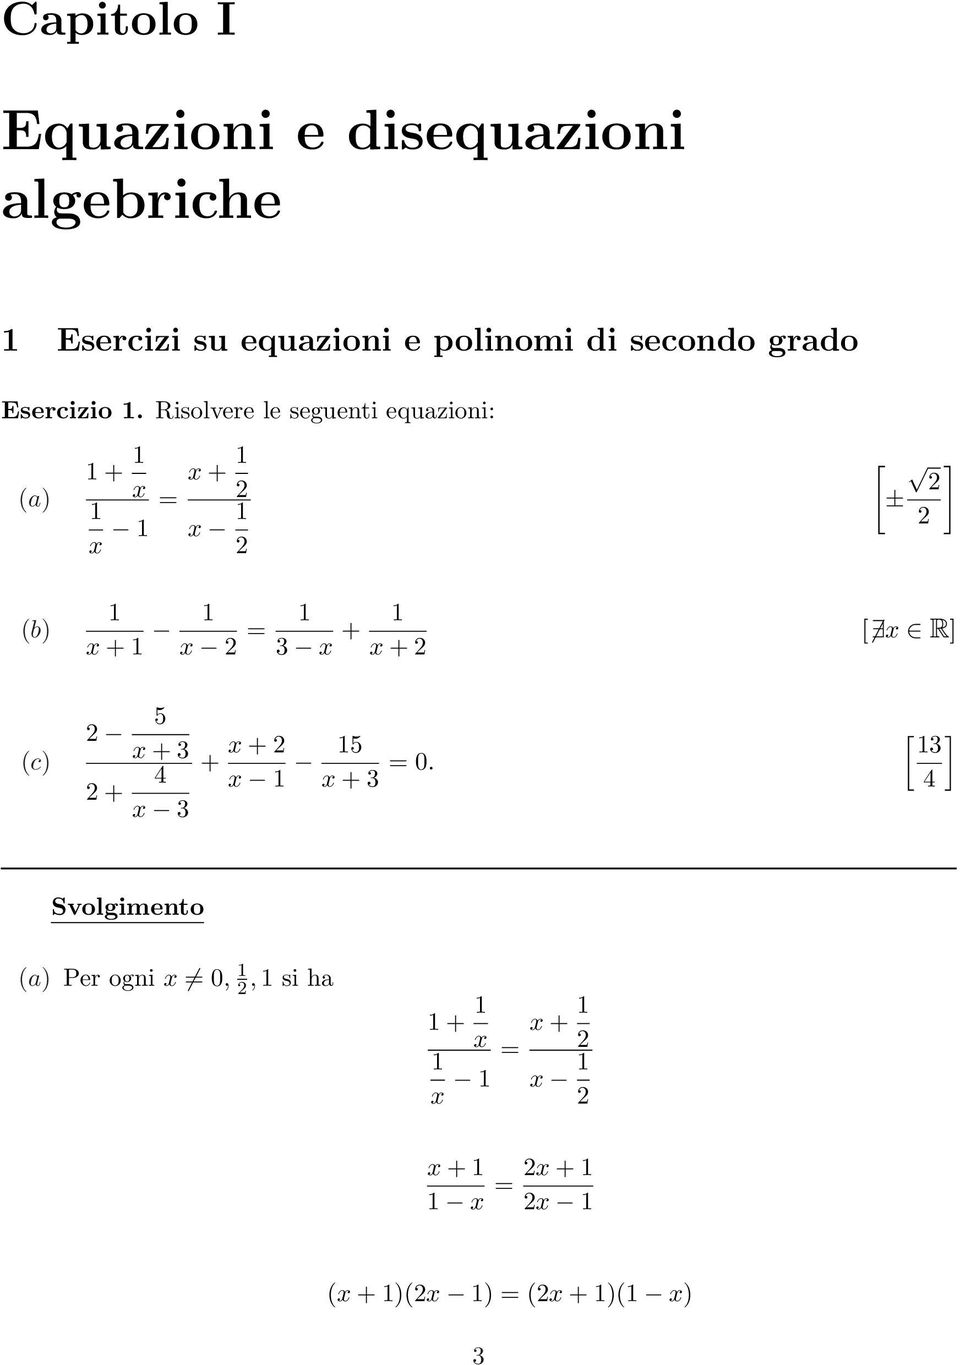 Risolvere le seguenti equazioni: (a) + x + x = x x [ ] ± (b) x + x = 3 x + x + [ x